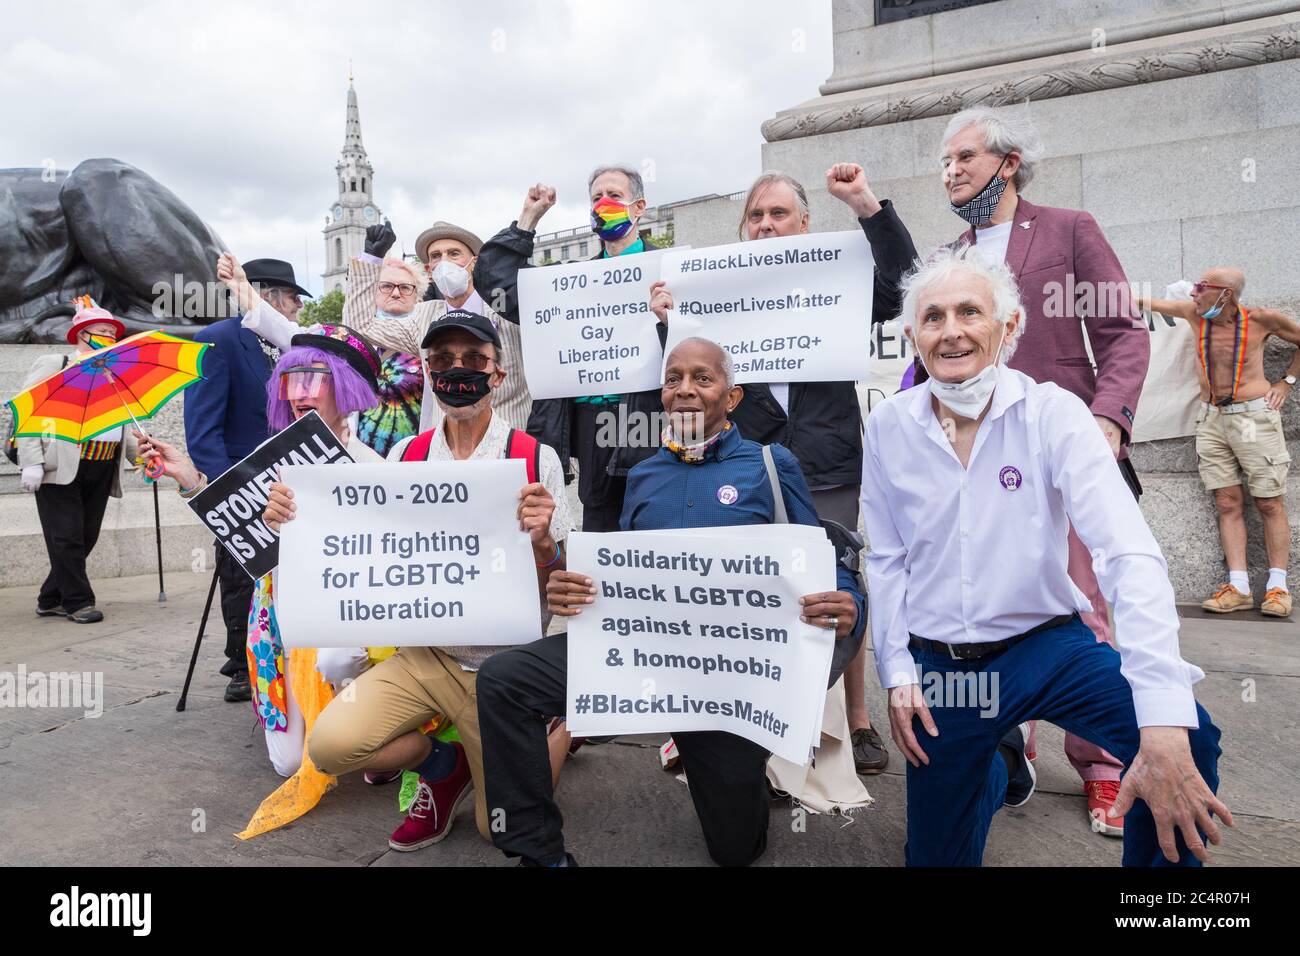 Queere Rechtsveteranen marschieren in Central London, um den 50. Jahrestag der Gay Liberation Front zu feiern und Stolz als Protest zurückzufordern Stockfoto